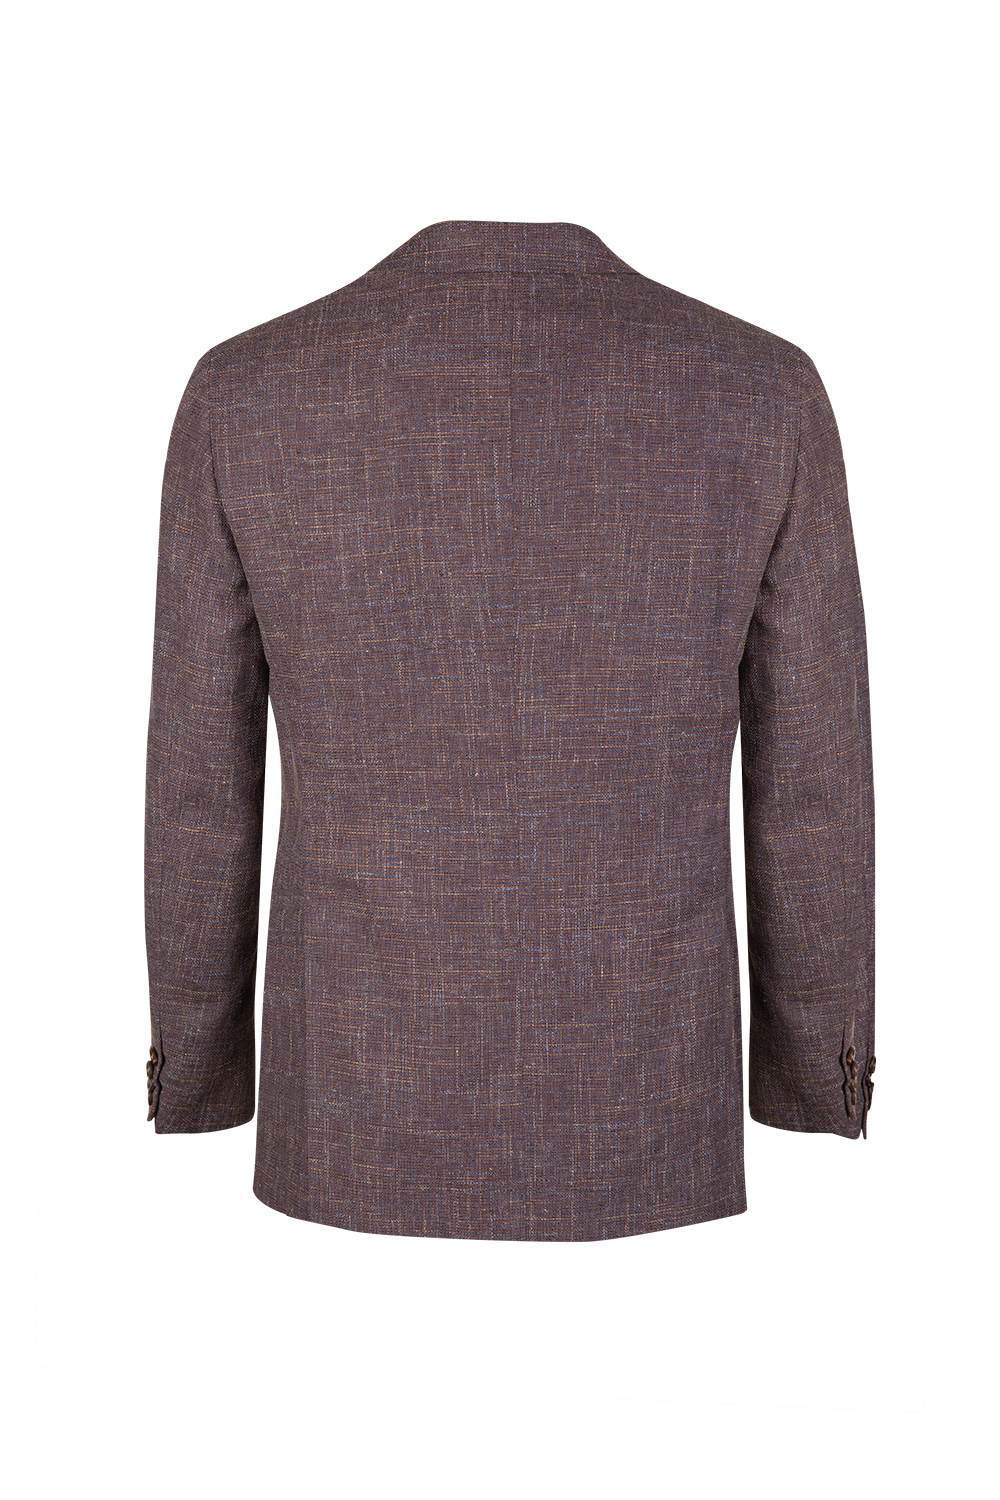 Pal Zileri Men's Linen-blend Wool Blazer Jacket Purple - Linea Fashion